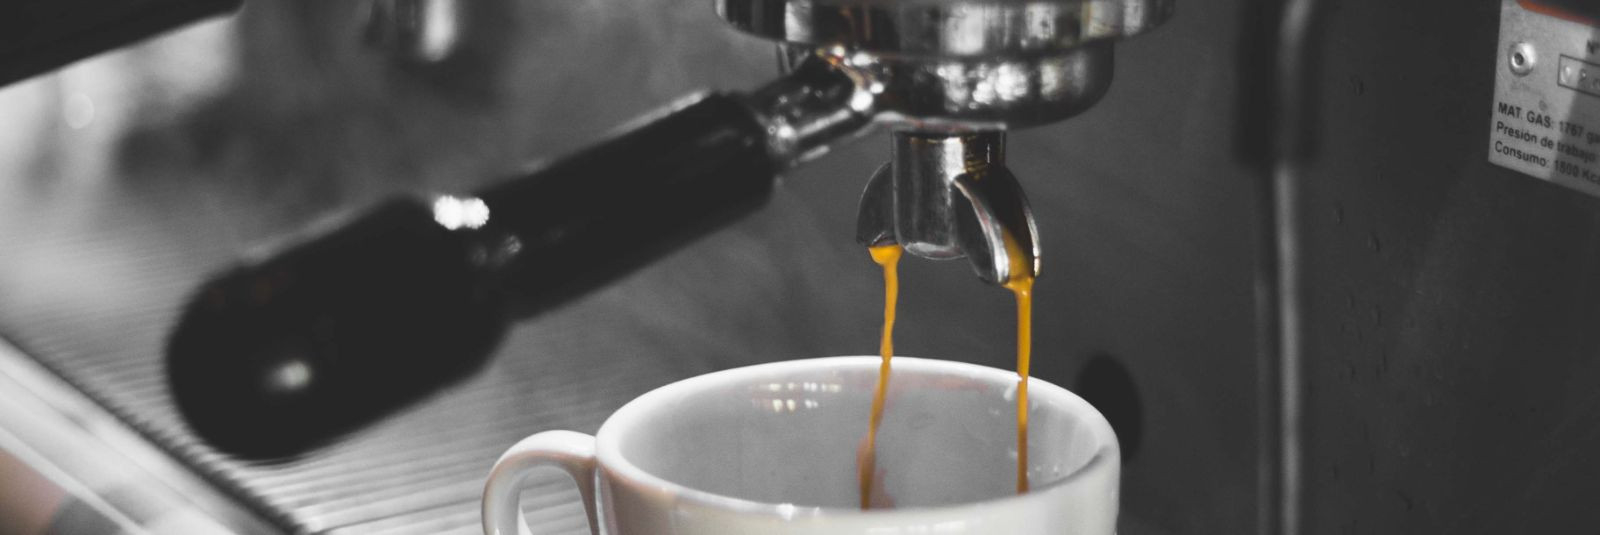 Kohvimasin on oluline tegur kohvi kvaliteedi tagamisel ning sellel ...